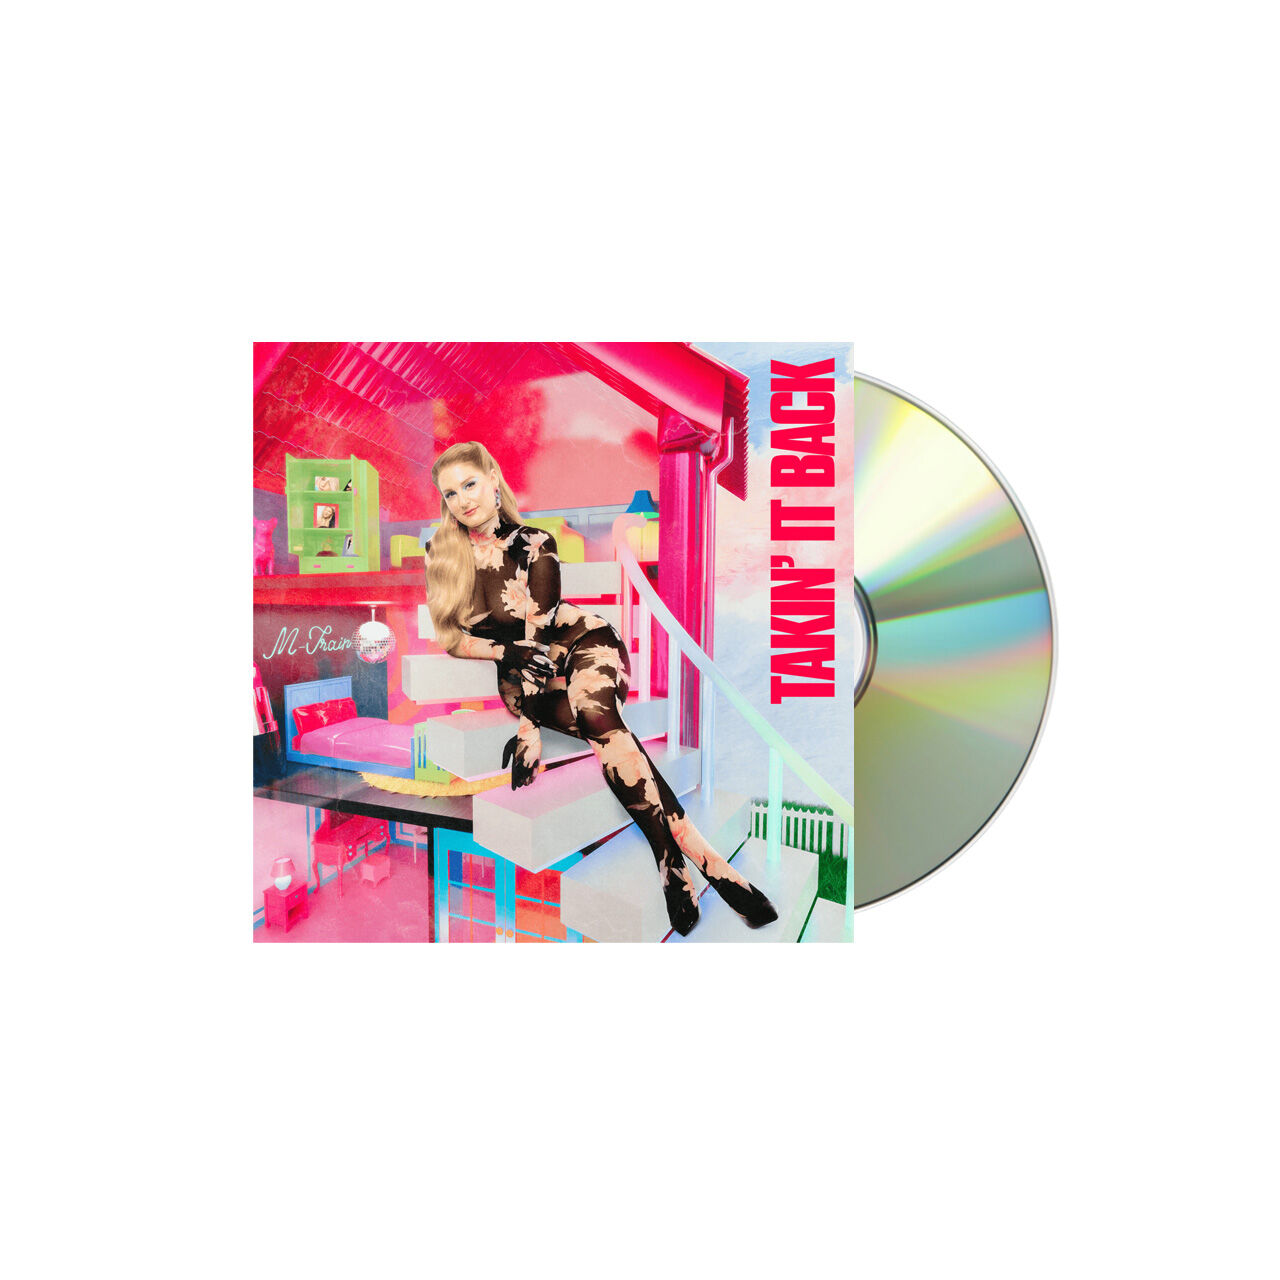 MEGHAN TRAINOR Takin’ It Back Jewel Case CD